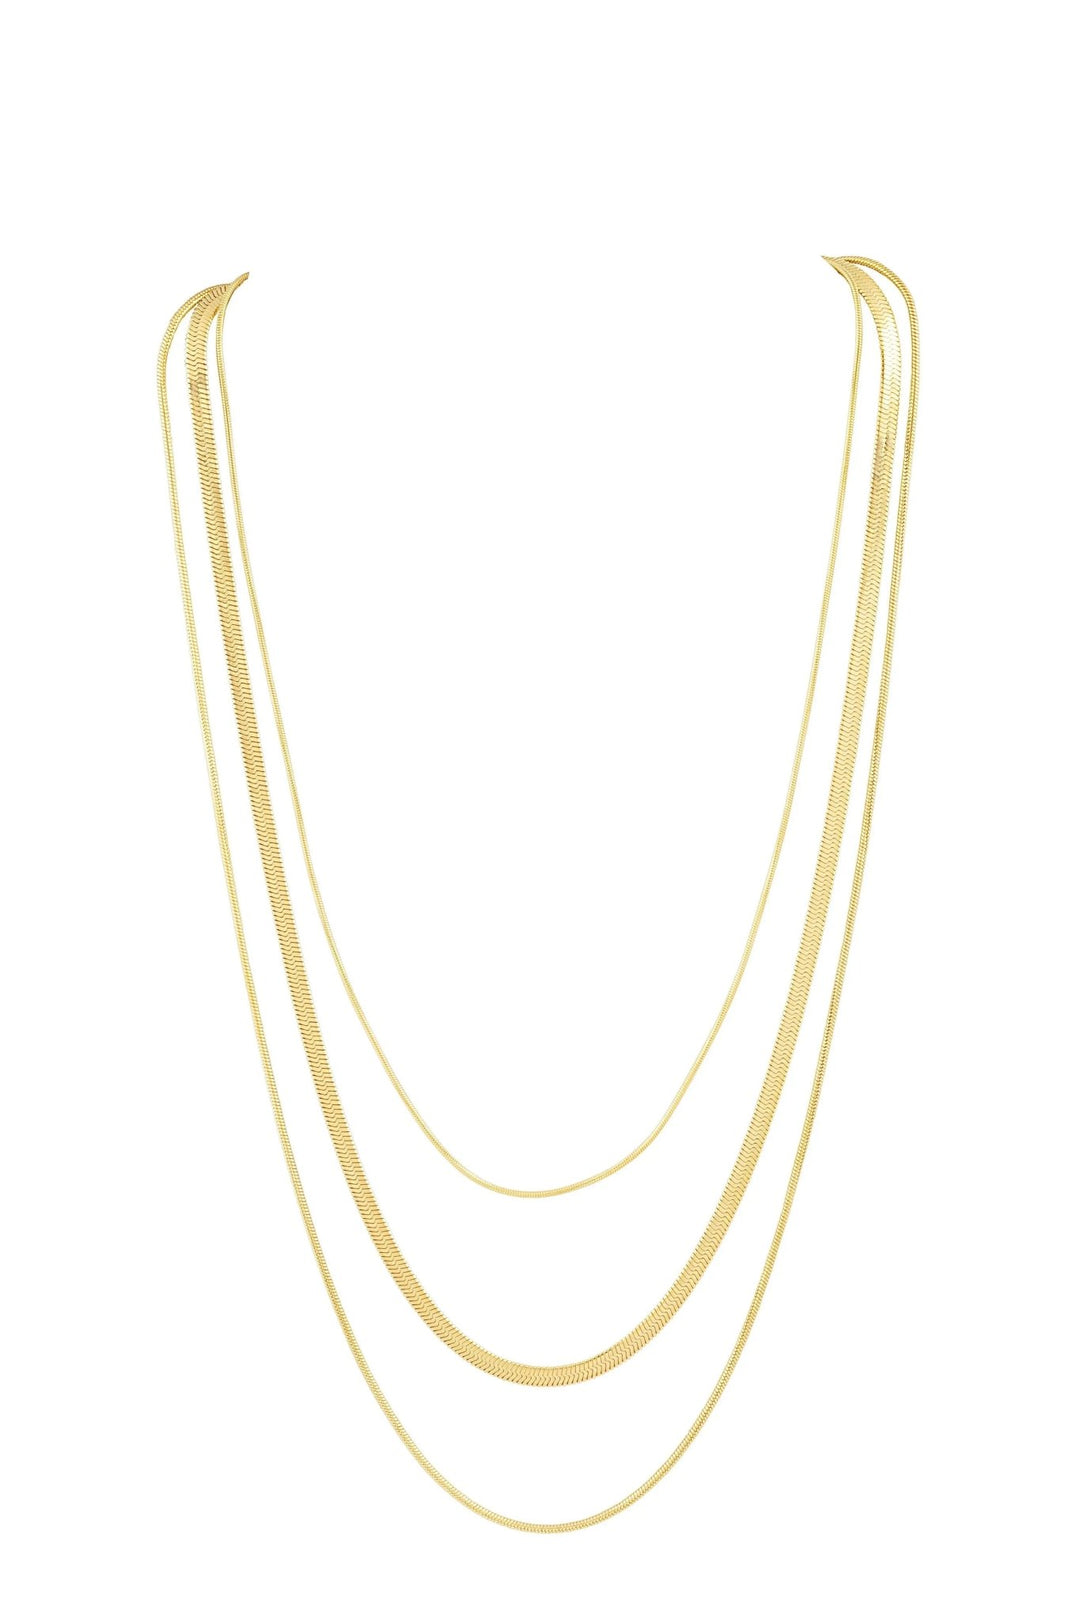 Rio Multi Chain Necklace - Final Sale - JO+CO